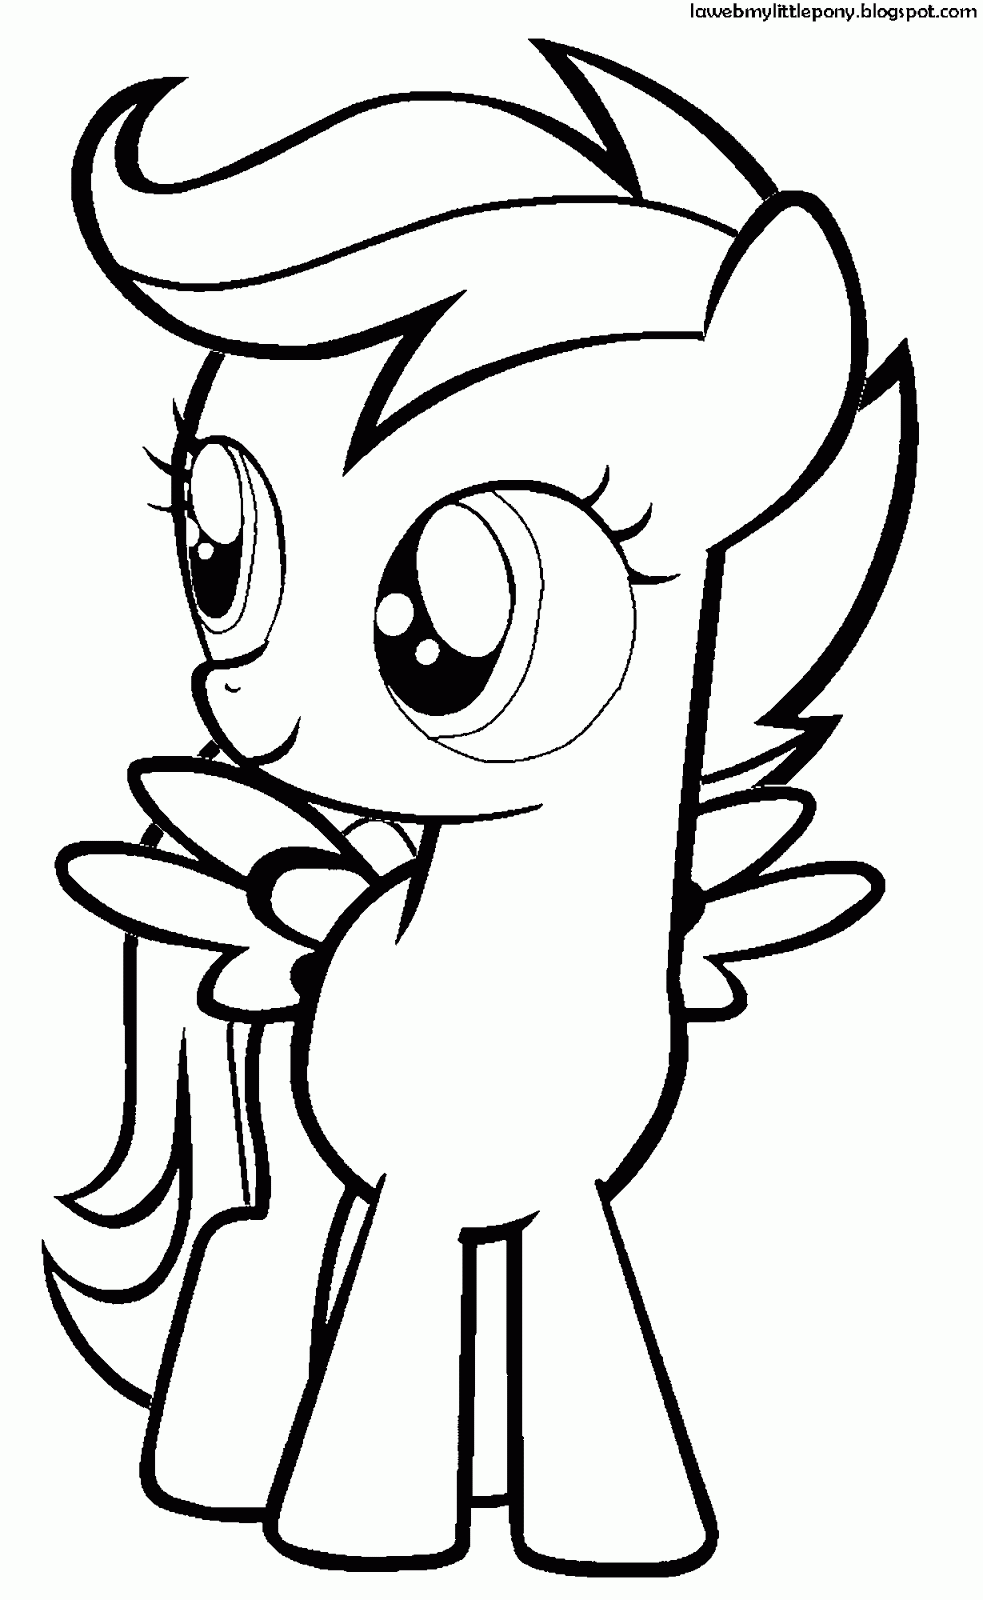 pony para colorear e imprimir dibujo de fluttershy para colorear dibujos de my little e para colorear pony imprimir 